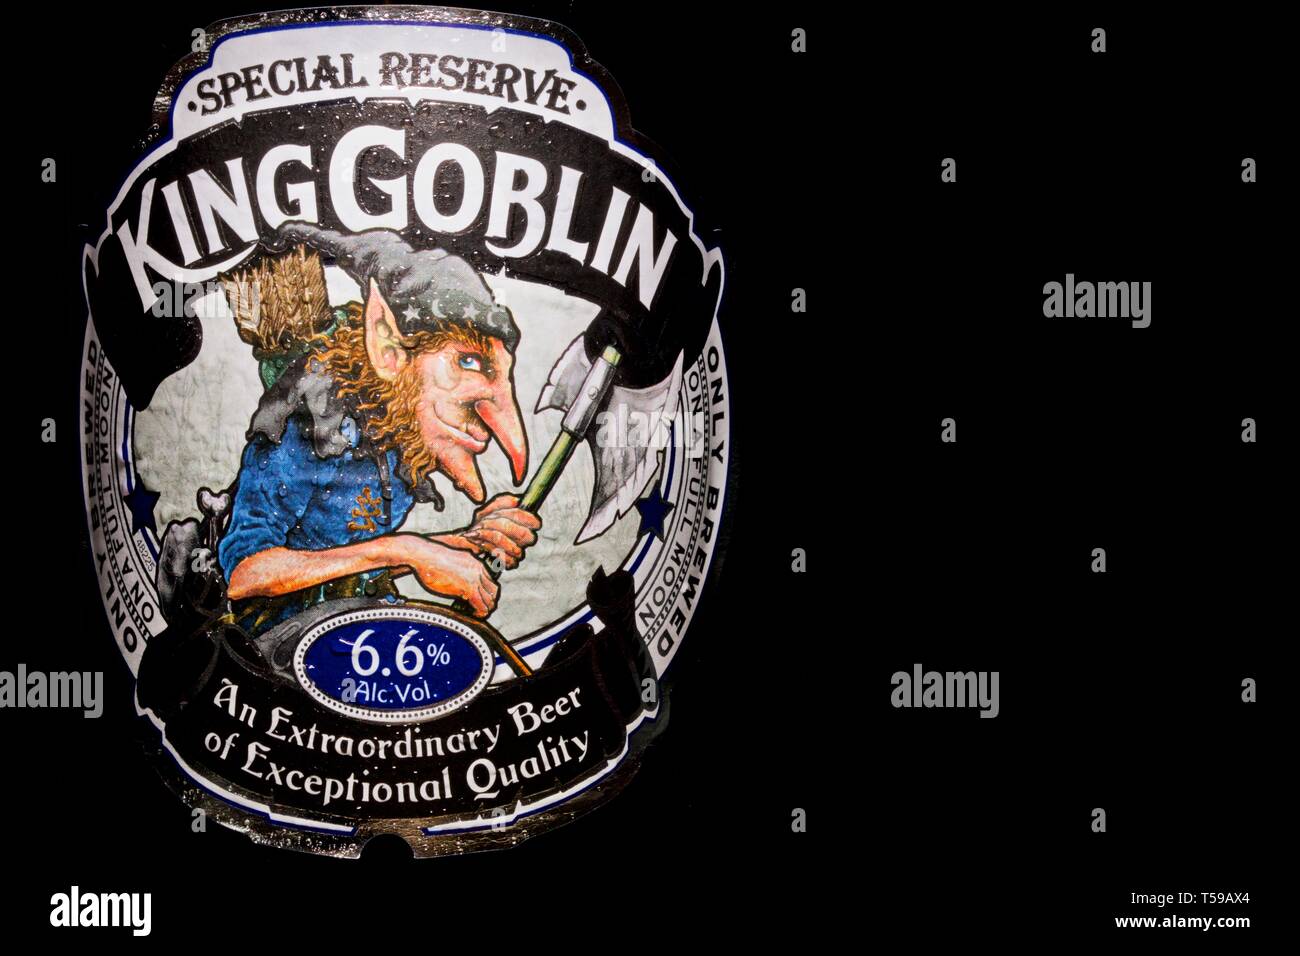 Wychwood King Goblin Ale Stock Photo